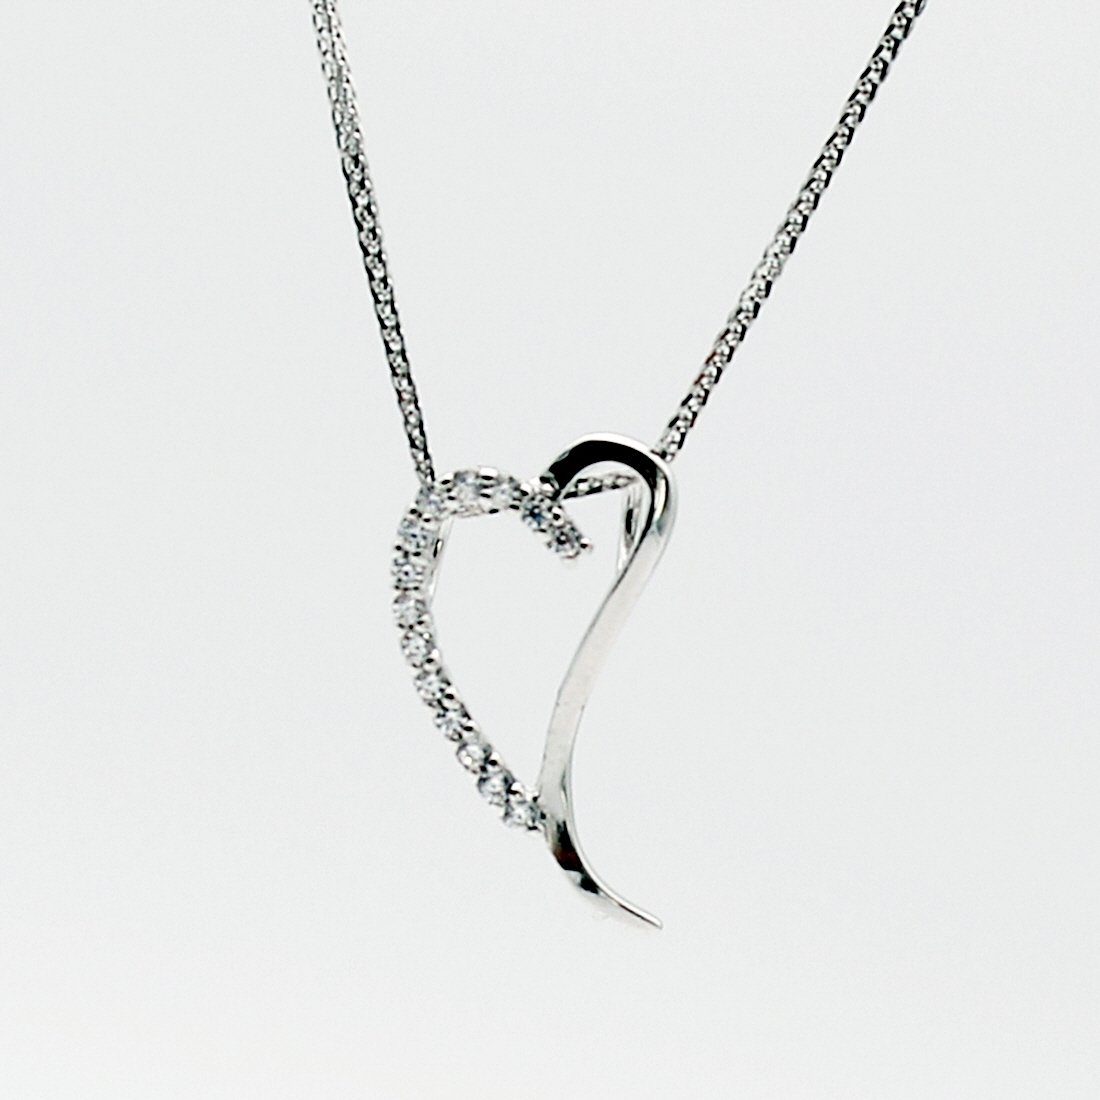 ELLAWIL Silberkette Damen Kette mit Herz Anhänger Halskette Schmuck Ankerkette (Kettenlänge 50 cm, Sterling Silber 925), inklusive Geschenkschachtel